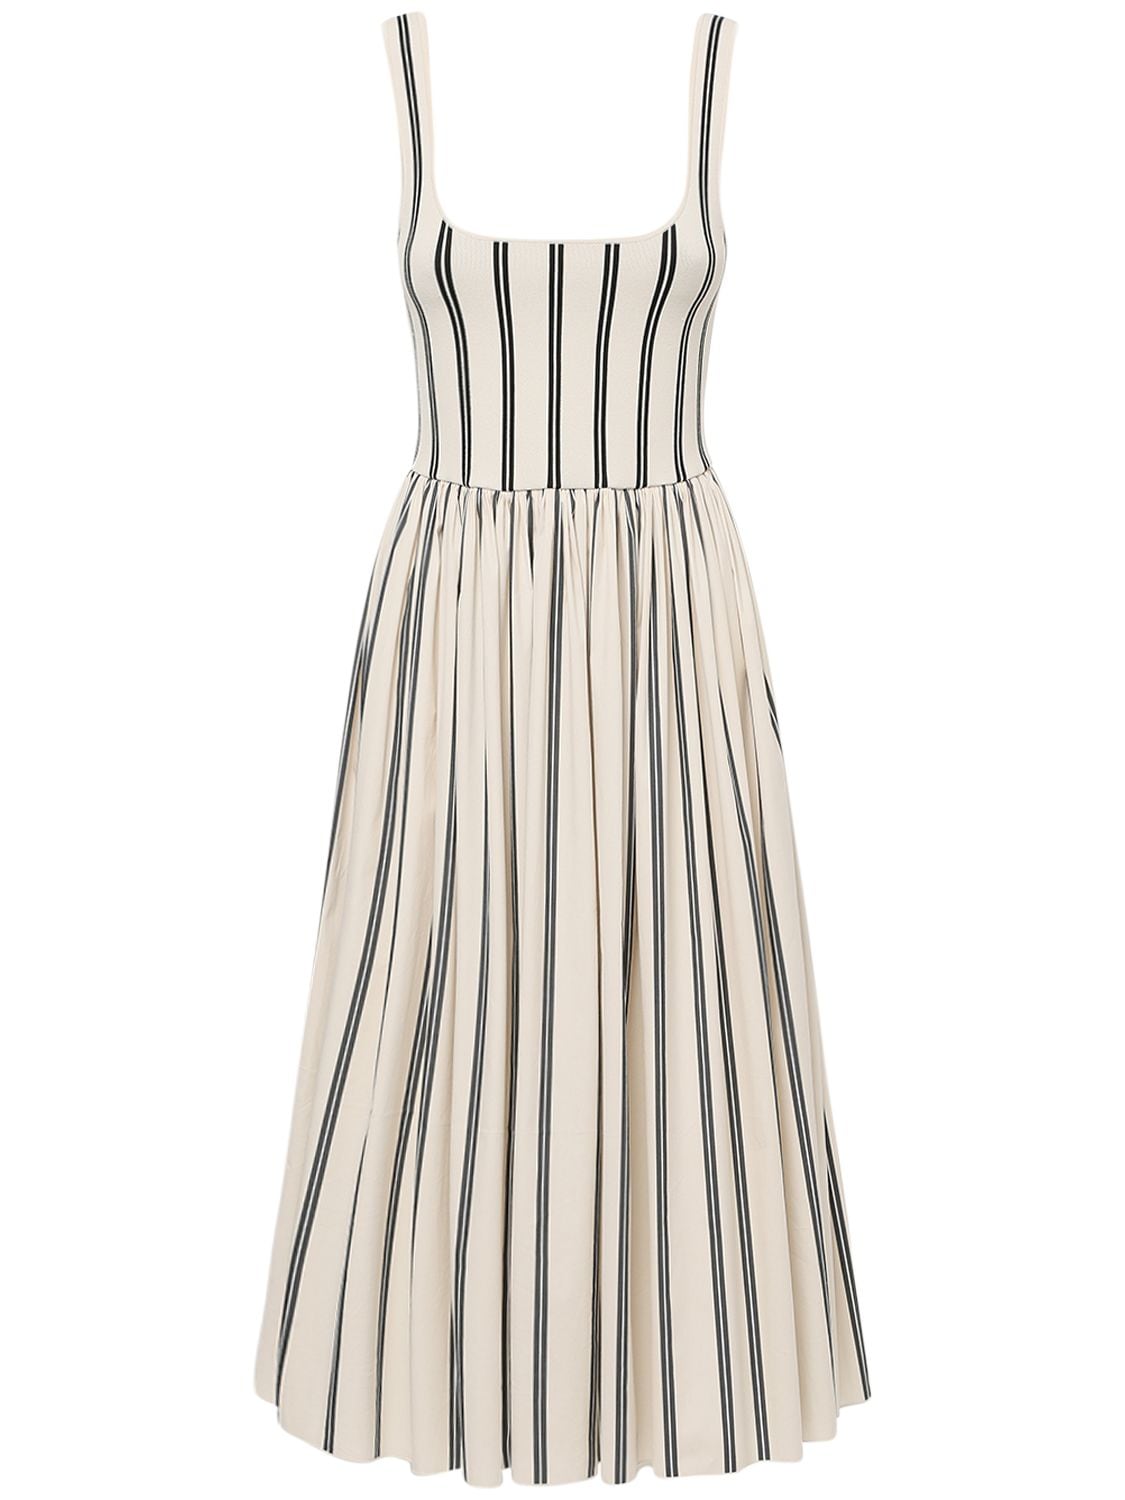 THEORY Striped Rayon Midi Dress